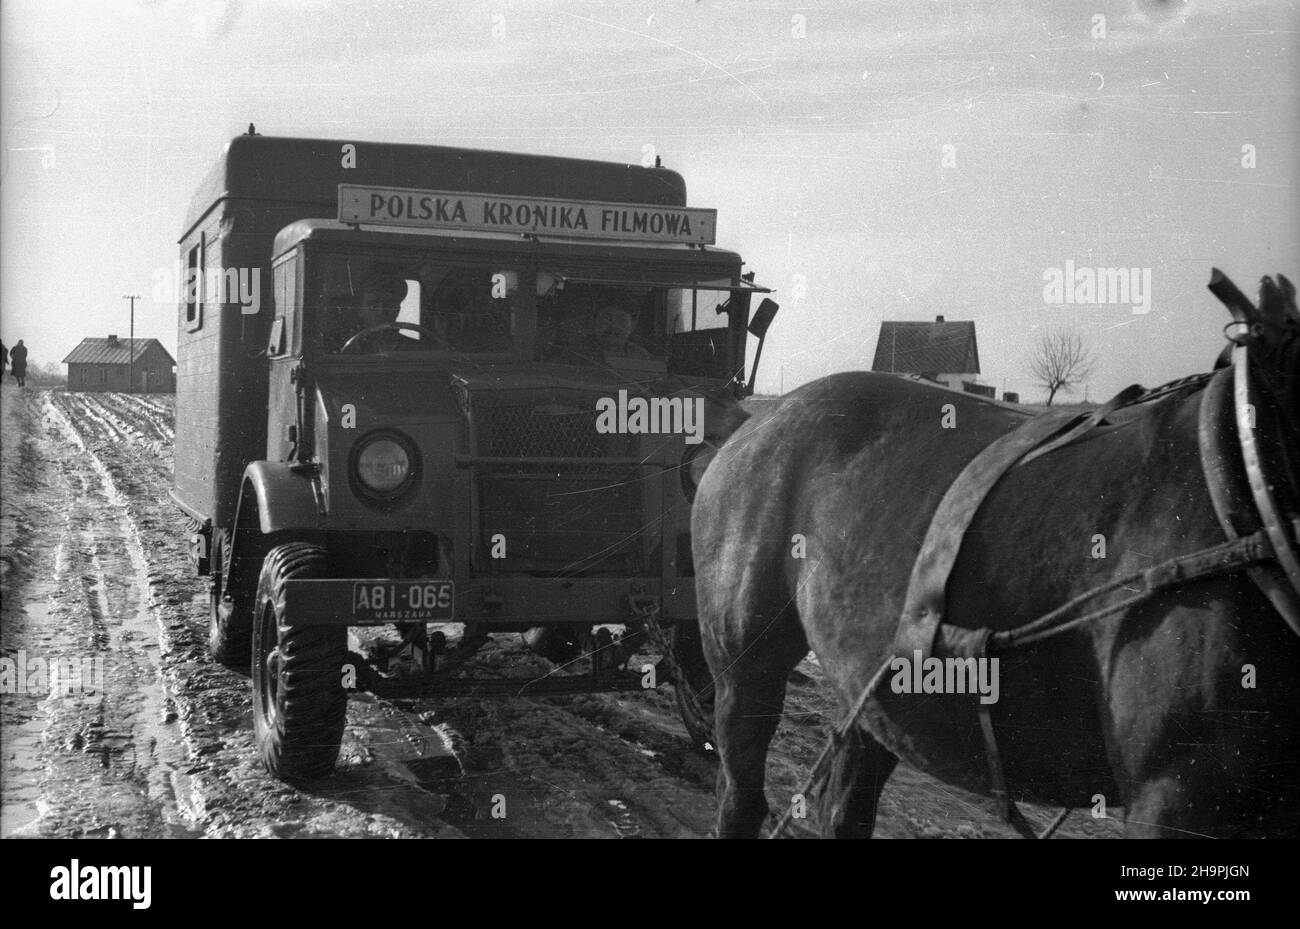 Polska, 1949-03. Topniej¹cy œnieg utrudnia poruszanie siê po drogach ca³ego kraju. Nz. samochód Polskiej Kroniki Filmowej (PKF), który utkn¹³ w poœniegowym b³ocie, trzeba by³o wyci¹gn¹æ koñmi.  mw  PAP    Dok³adny dzieñ wydarzenia nieustalony.      Poland, March 1949. Melting snow hindered road traffic across Poland. Pictured: horses were used to get out a Polish Newsreel (PKF) car which got stuck in mud.   mw  PAP Stock Photo